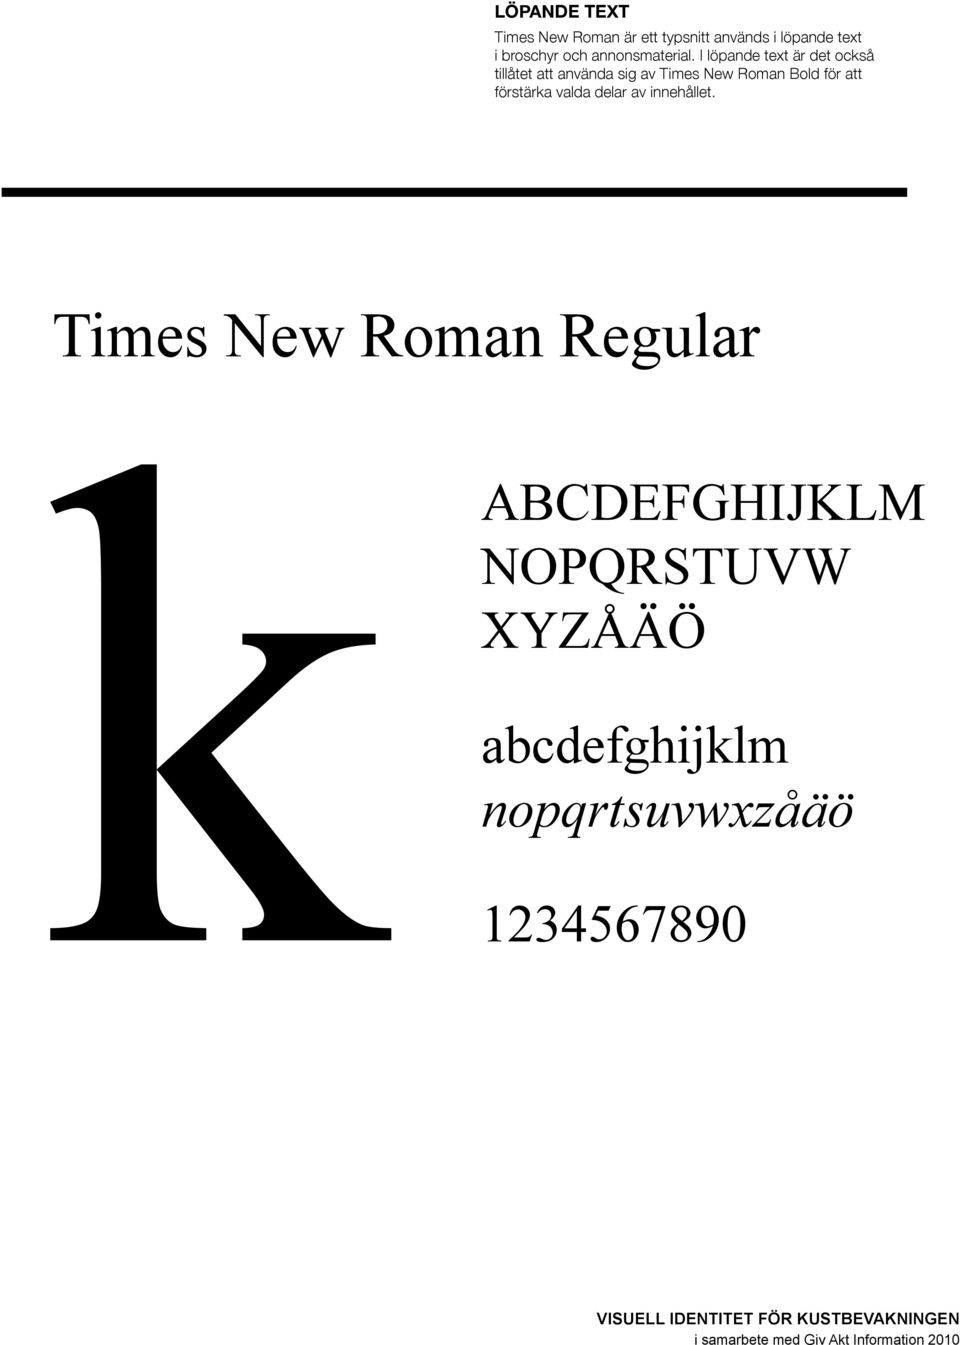 I löpande text är det också tillåtet att använda sig av Times New Roman Bold för att